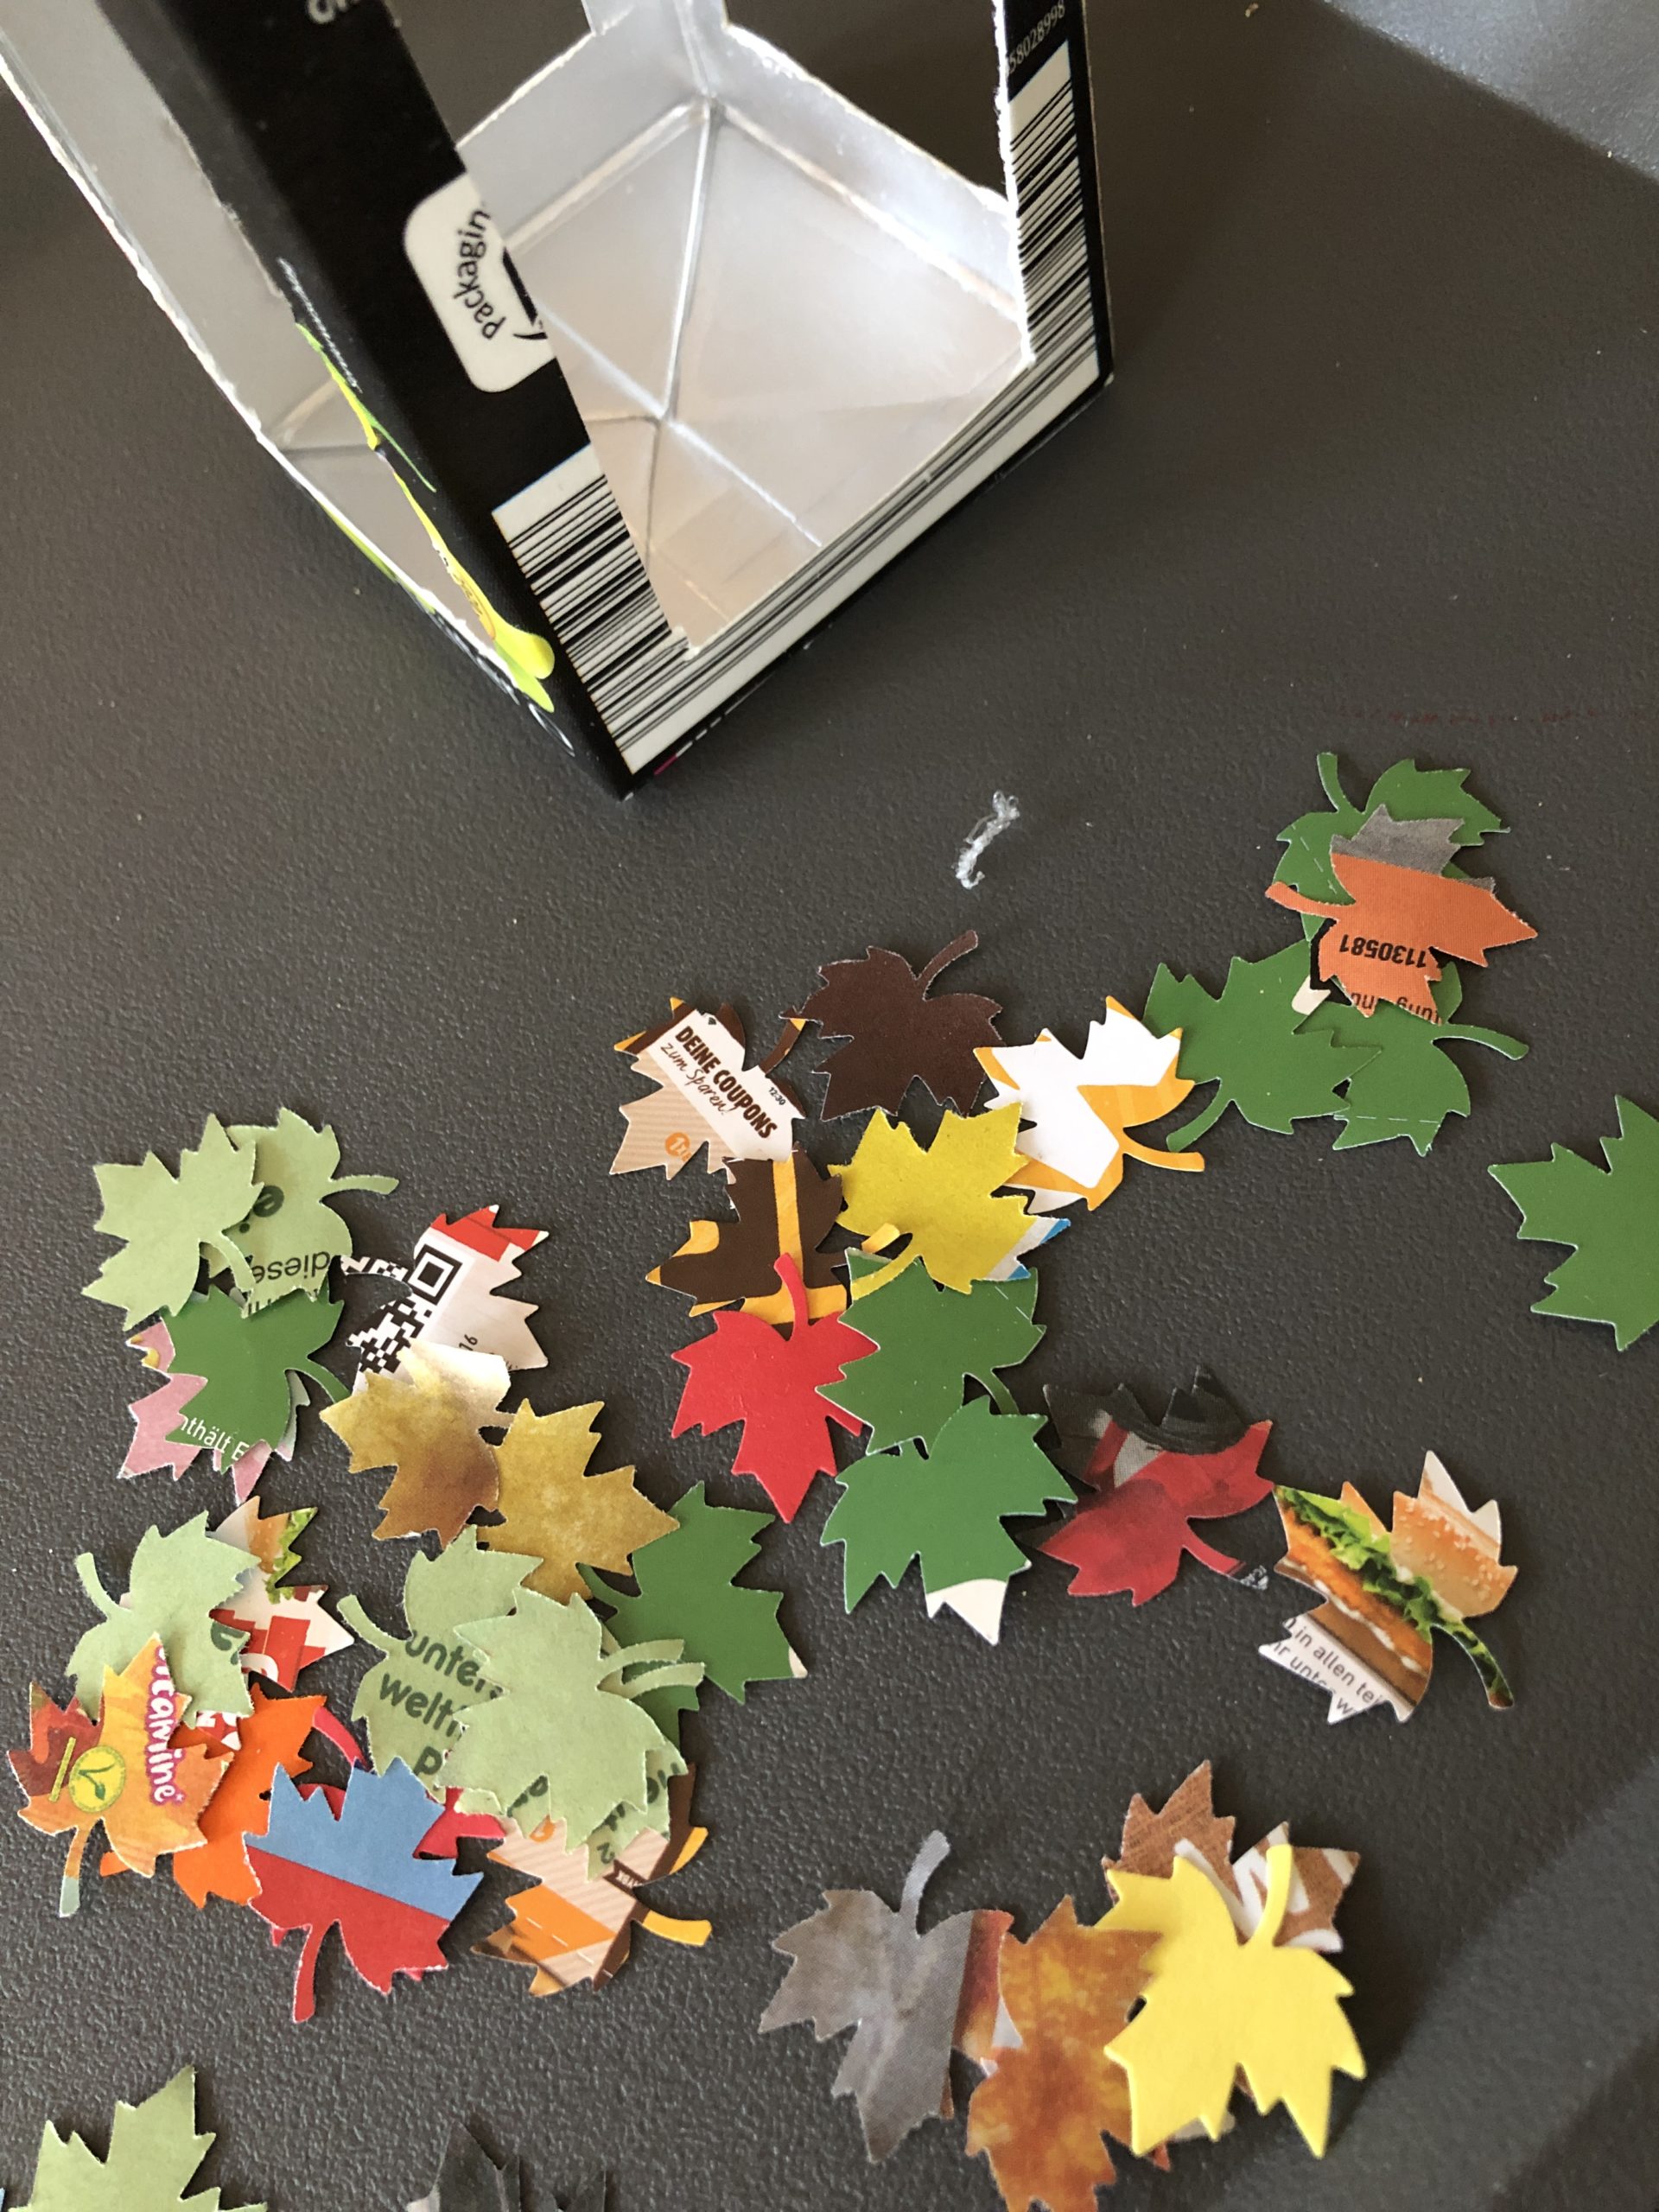 2. Bild zum Schritt 4 für die Kinder-Beschäftigung: 'Stanzt verschiedene Blätter in den unterschiedlichsten Herbstfarben aus den Werbeprospekten...'